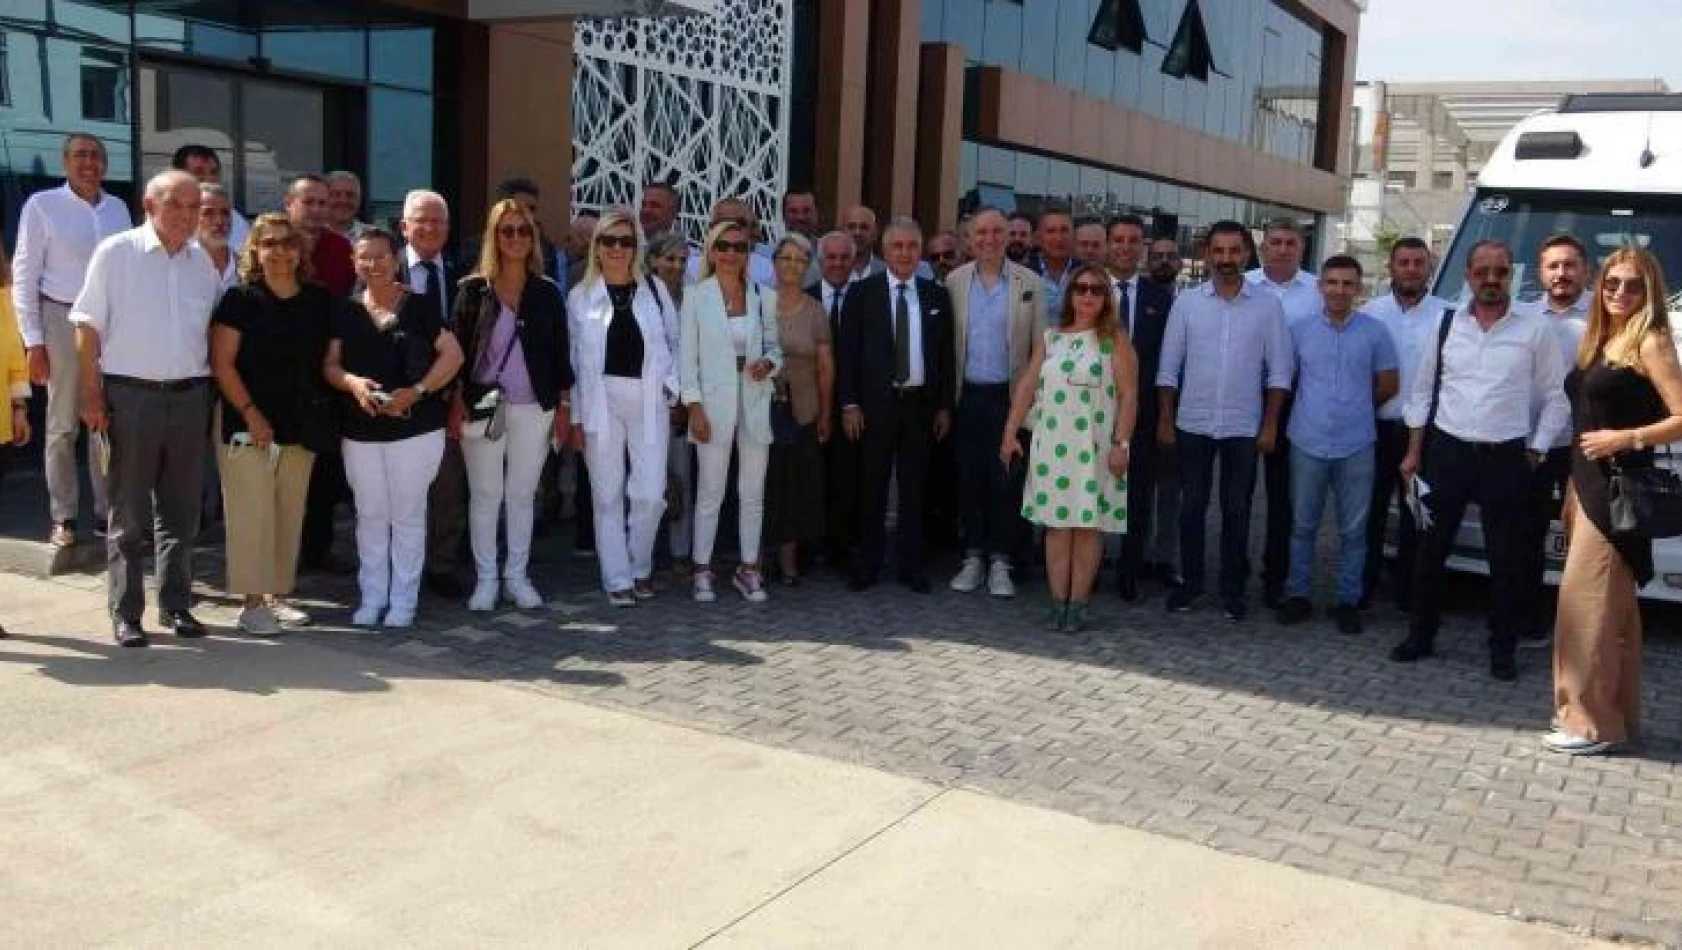 Diyarbakır'da MHGF 15. sektörel iletişim toplantısı gerçekleşti